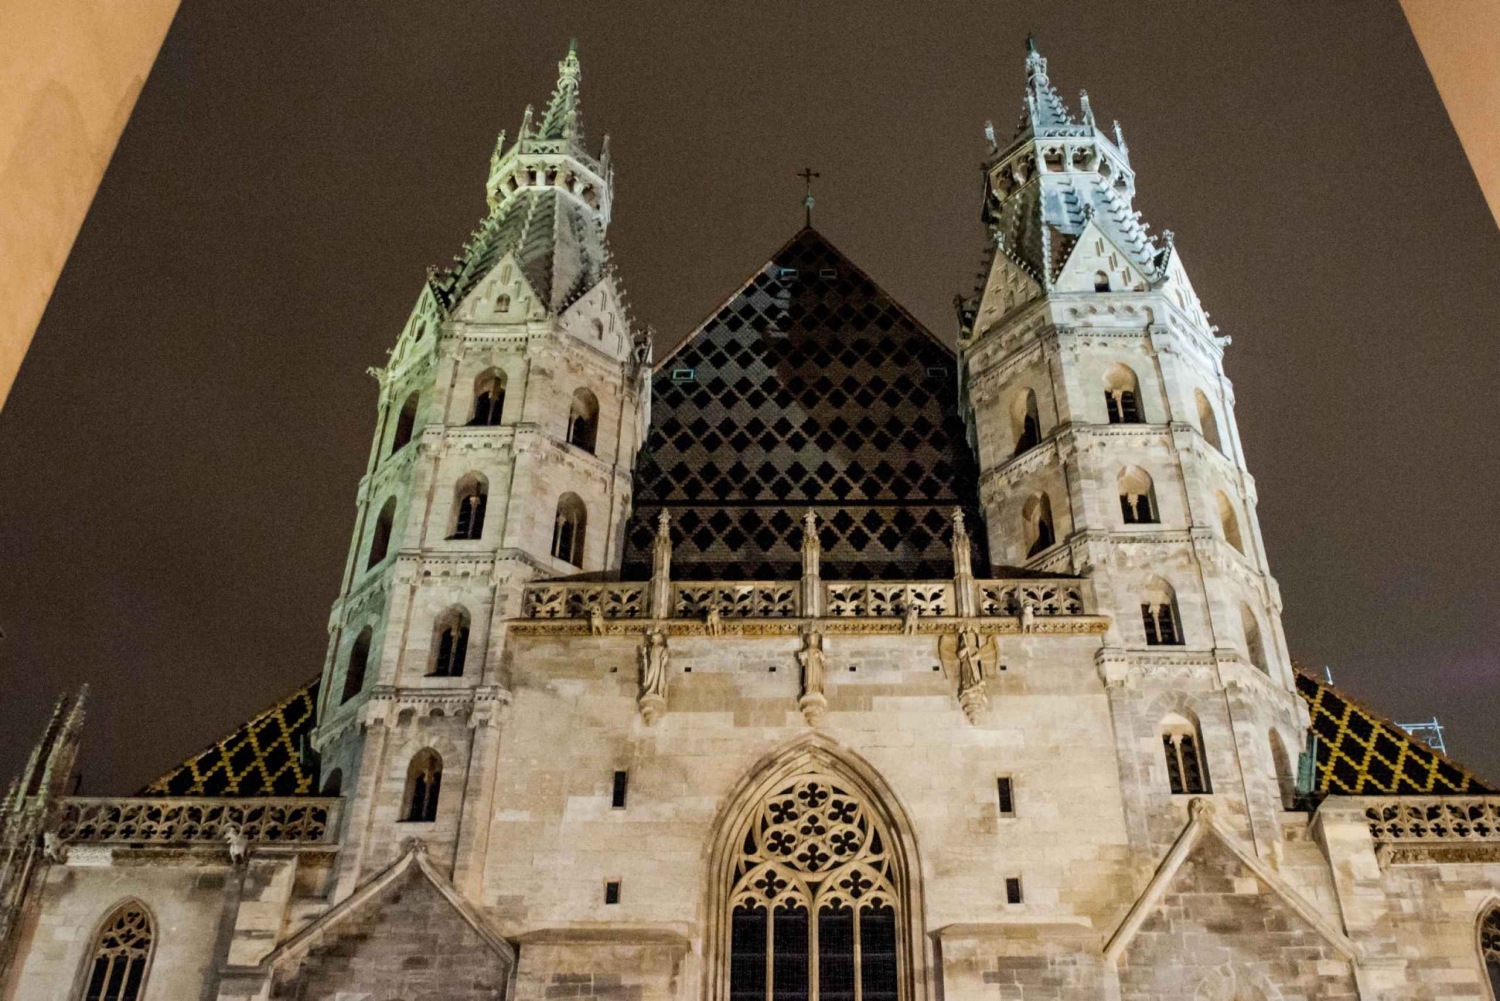 Wien: Kveldsomvisning med spøkelser og myter